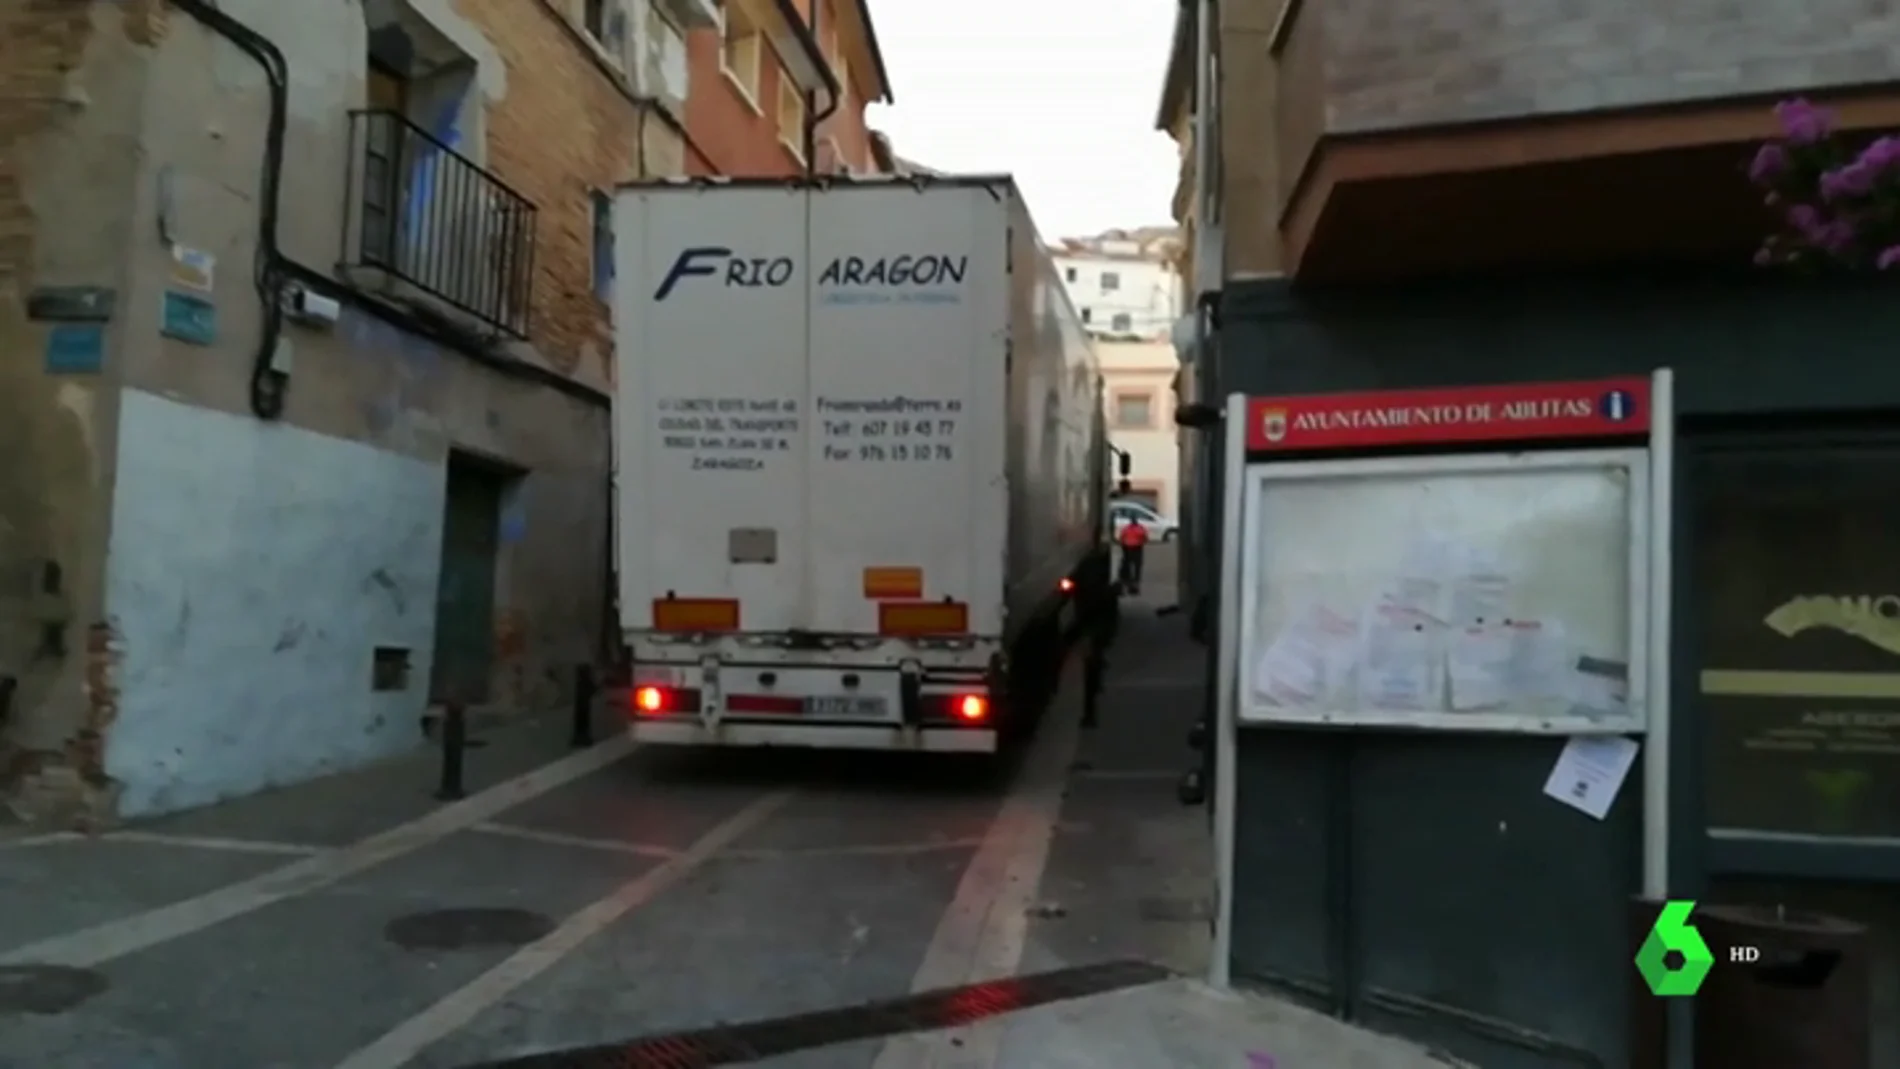 Camión frigorífico atrapado en la calle de un pueblo de Navarra